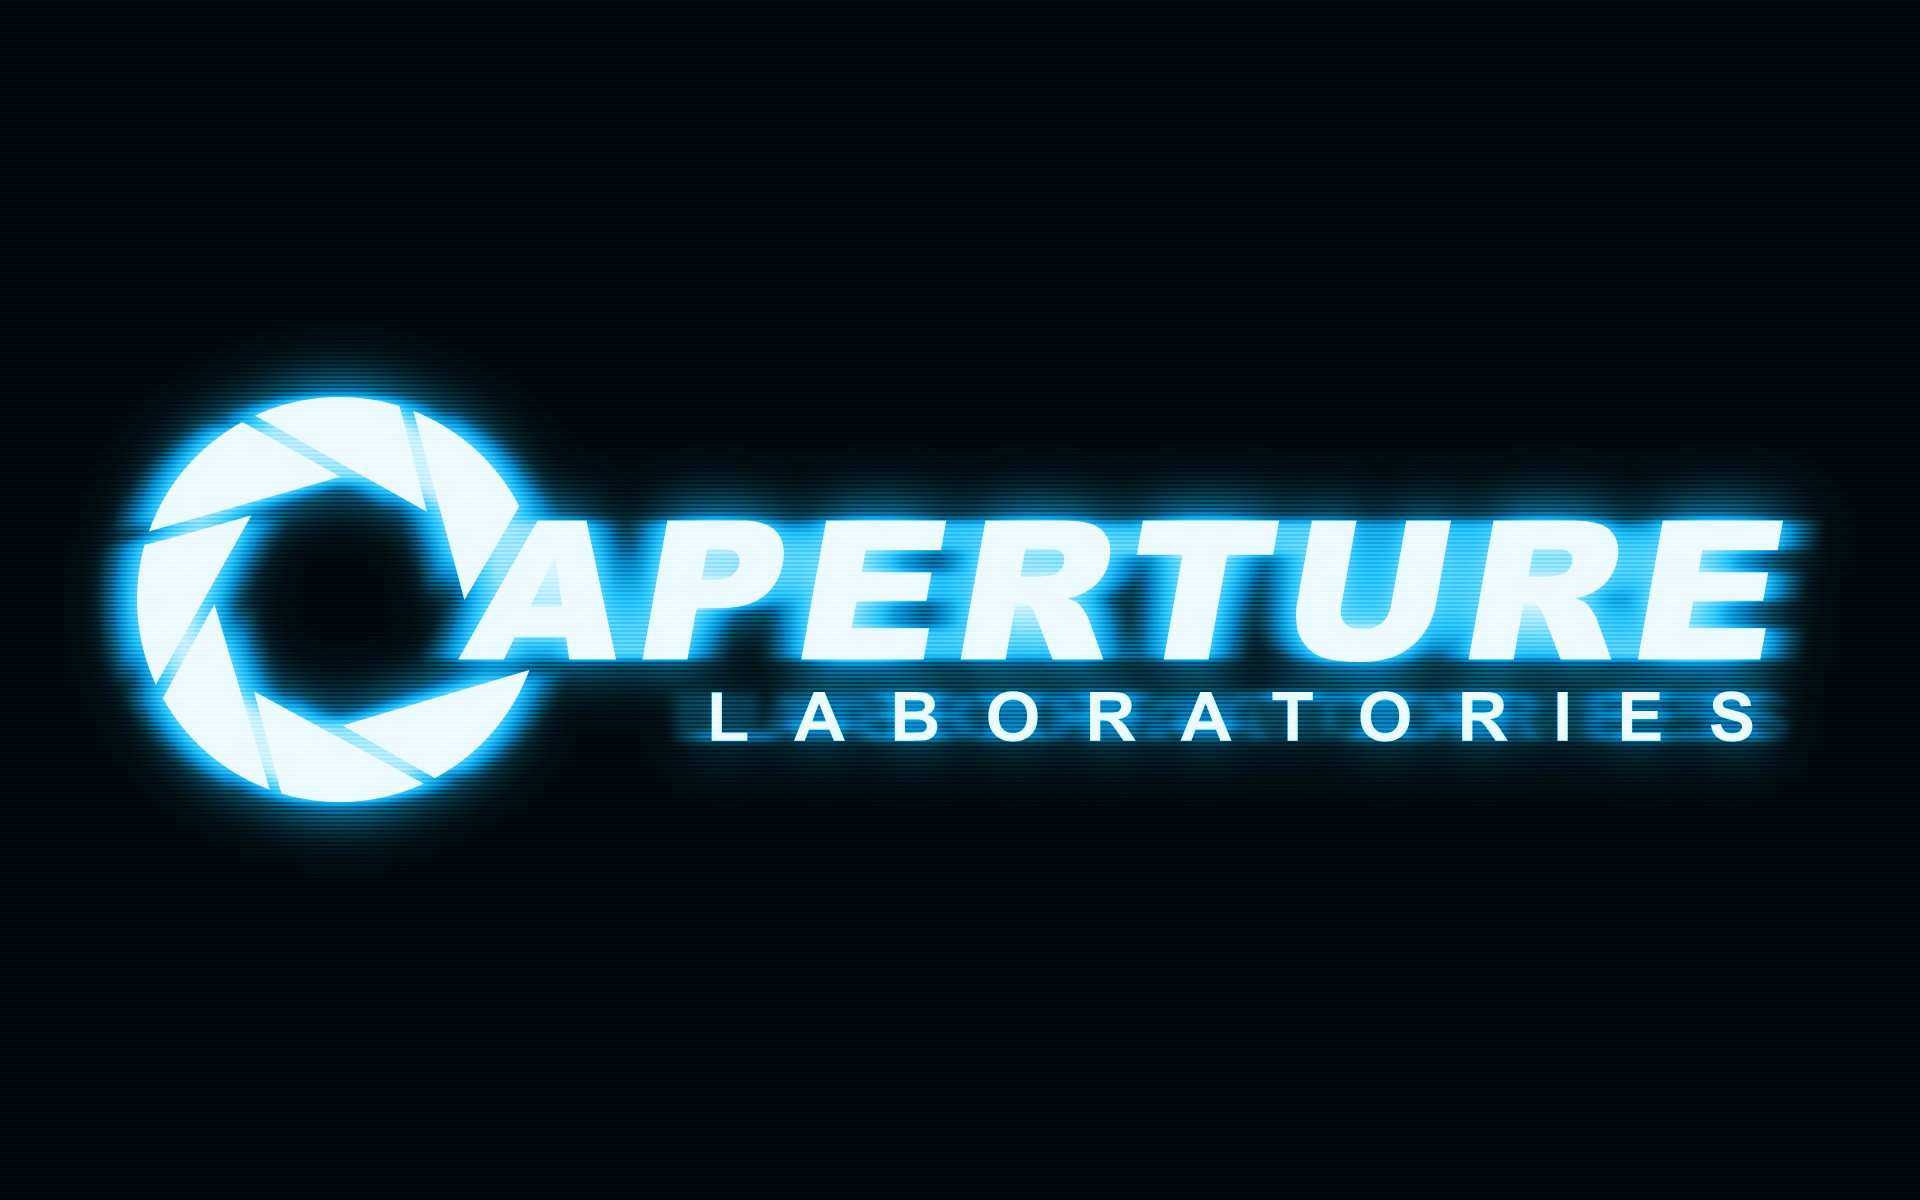 Aperture Laboratories Portal Game Portal 2 Video Games Cyan 1920x1200